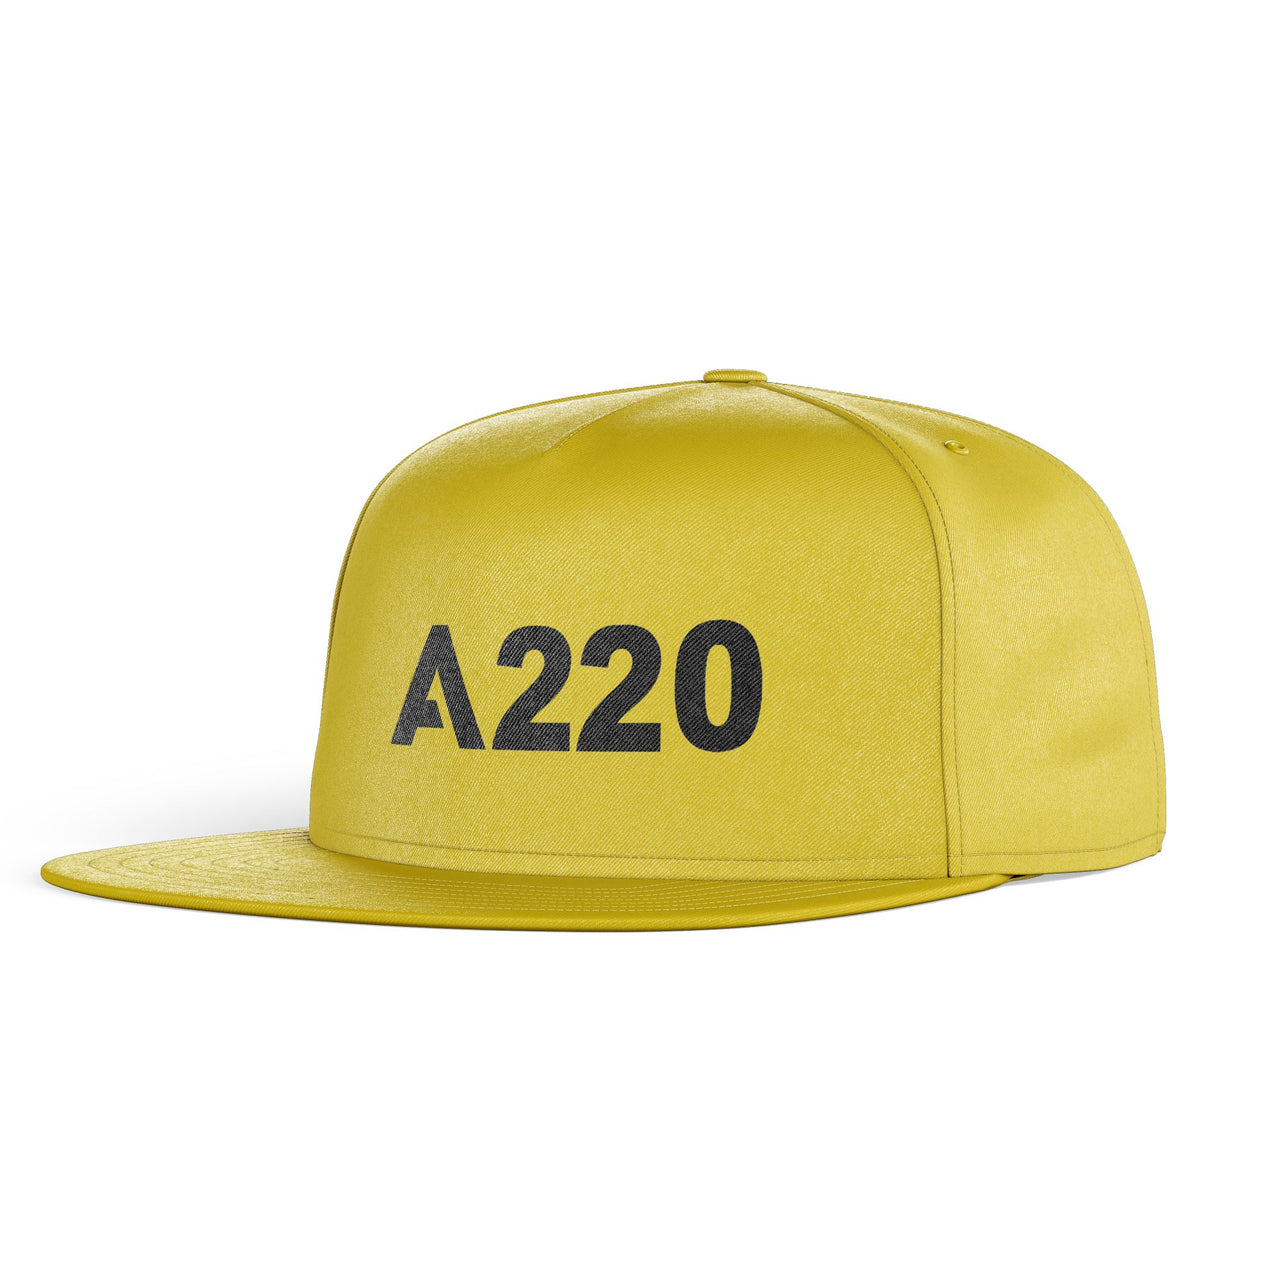 A220 Flat Text Designed Snapback Caps & Hats